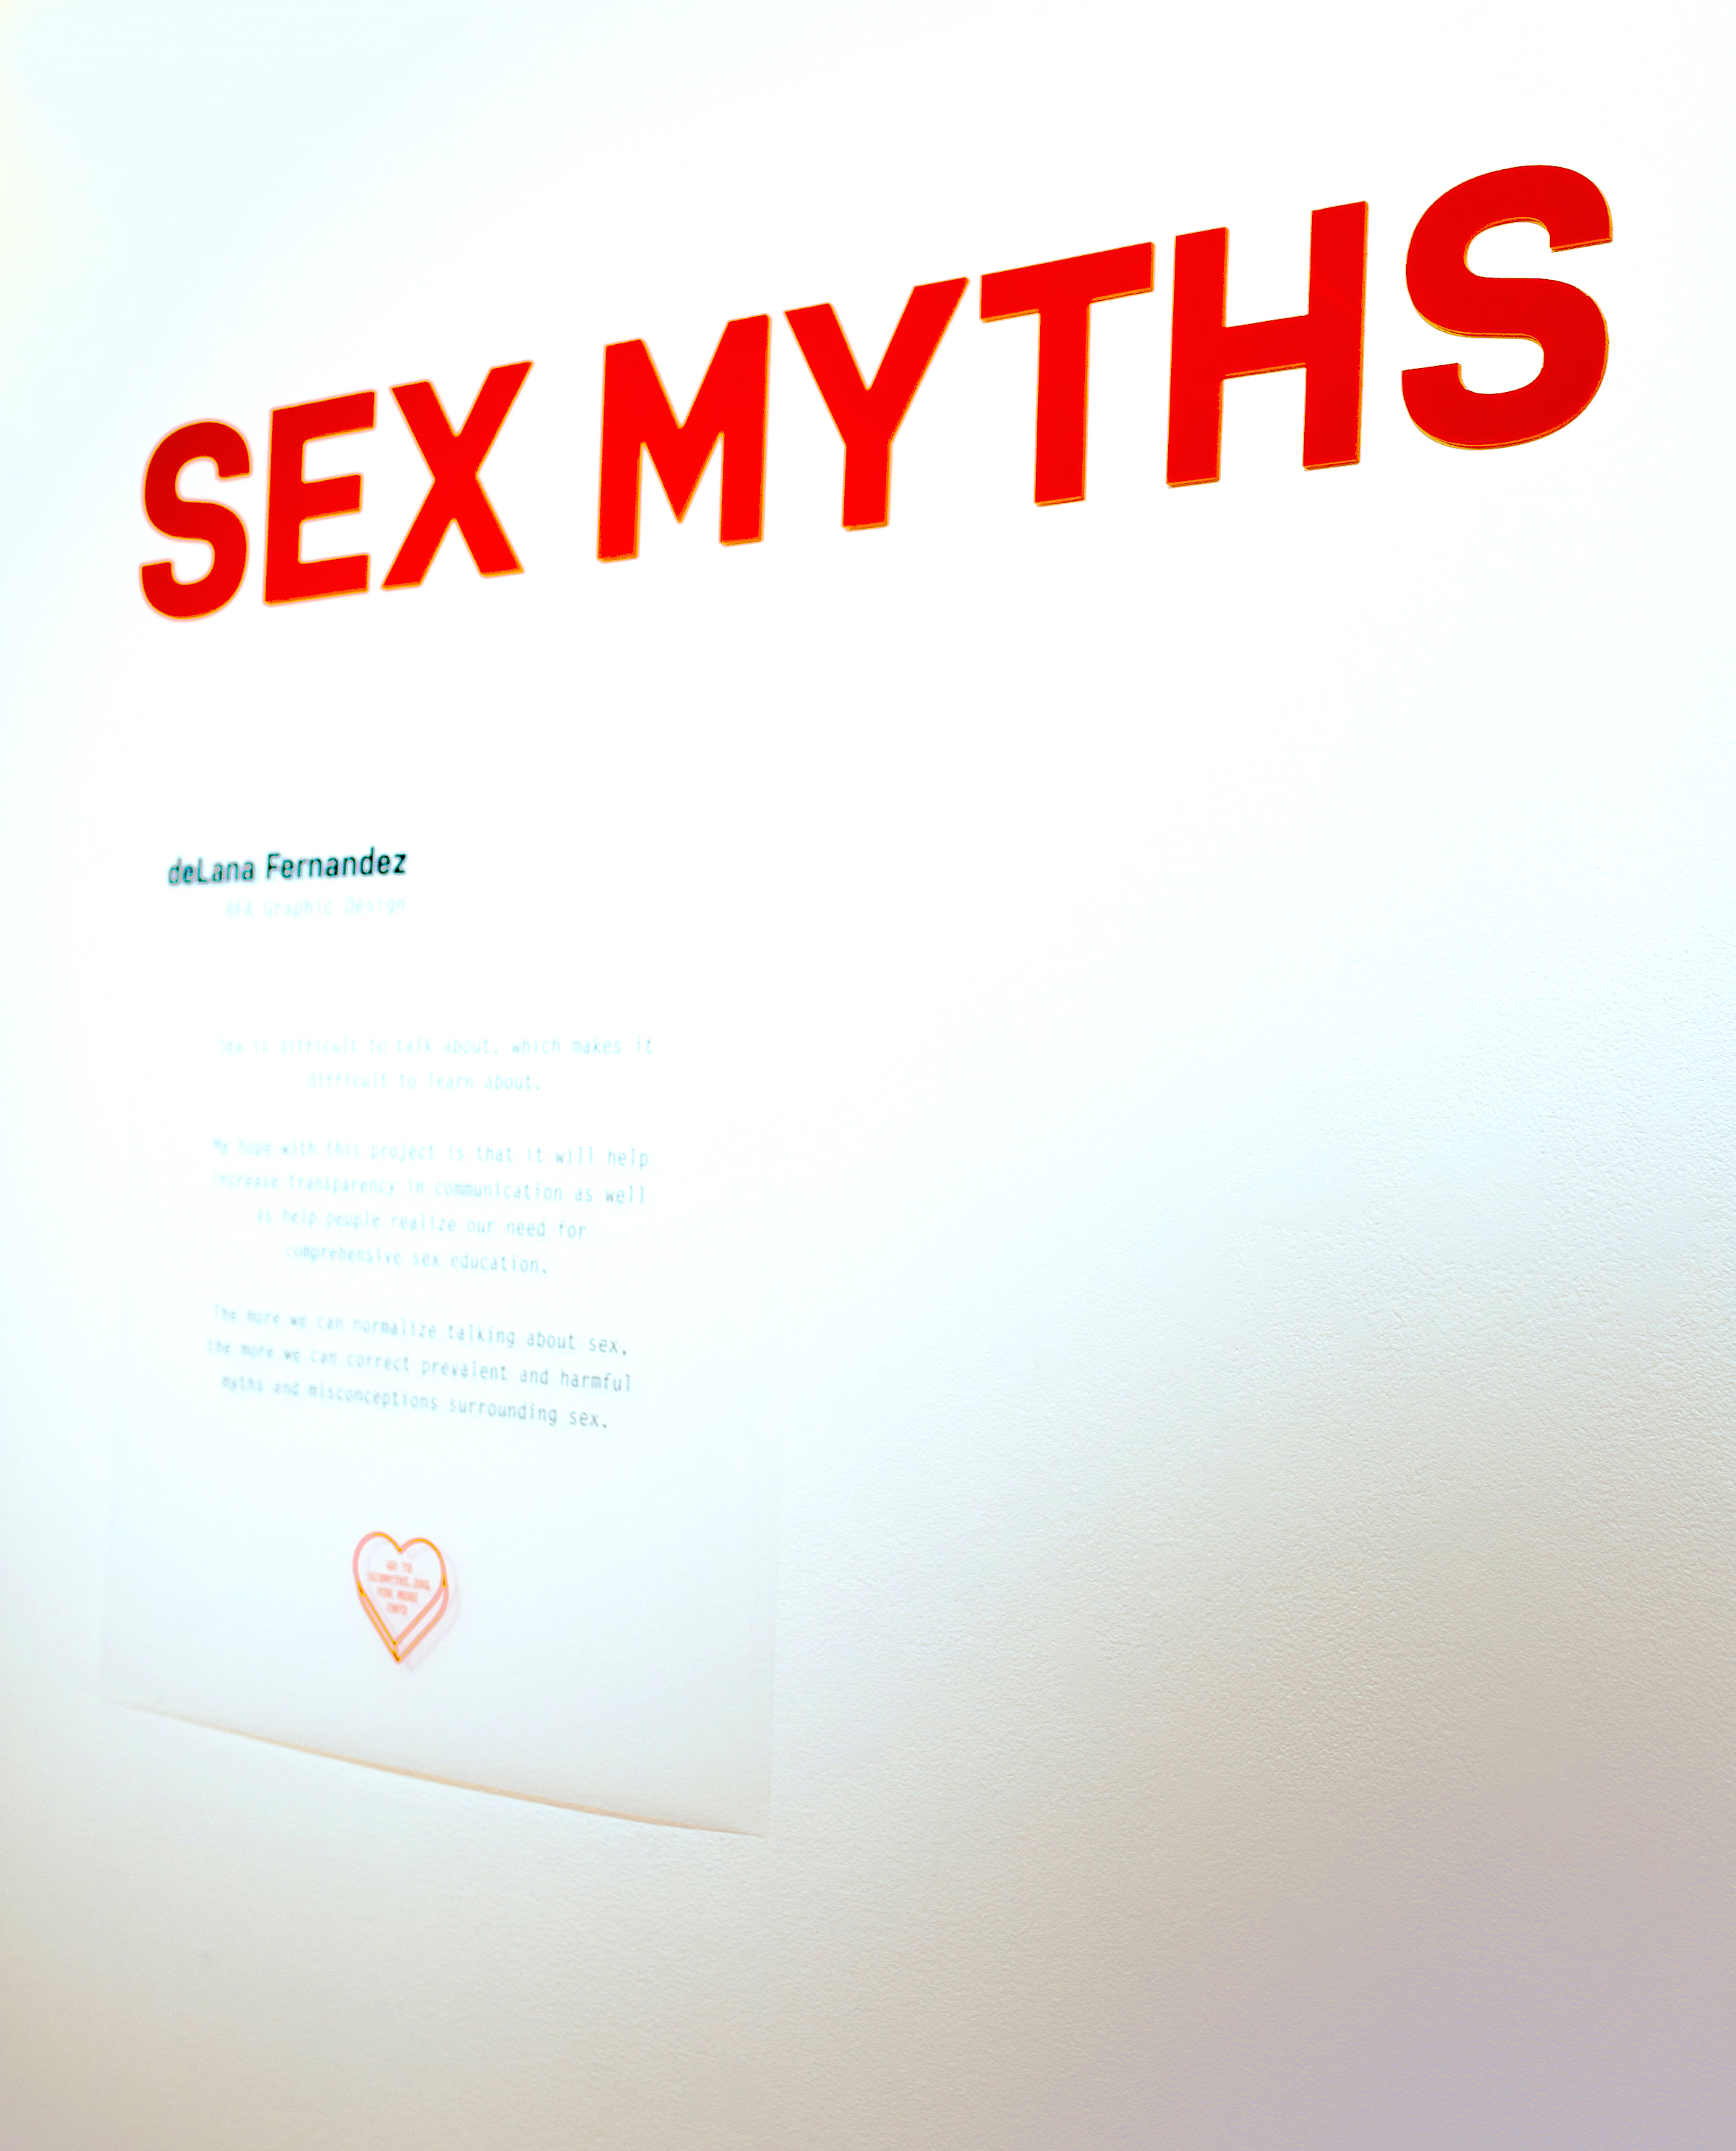 sex myths_1